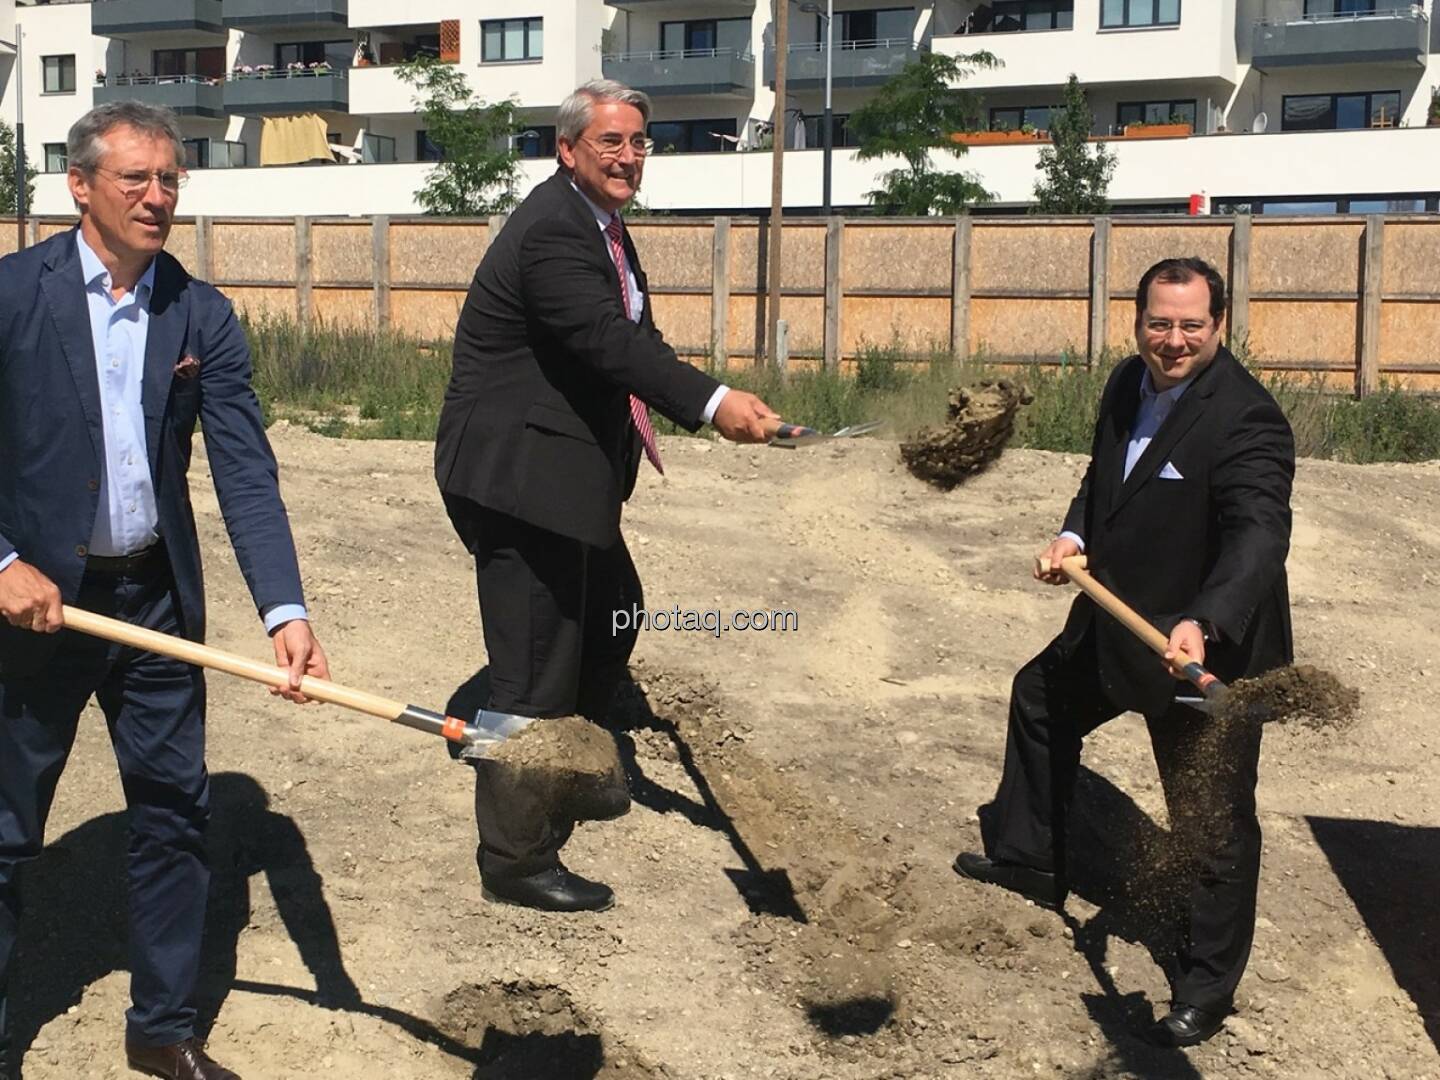 von links: Gerhard Schuster (3420 aspern development AG), Ernst Nevrivy (Bezirksvorsteher Donaustadt) und Daniel Riedl (CEO Buwog AG) beim Spatenstich in der Seestadt Aspern